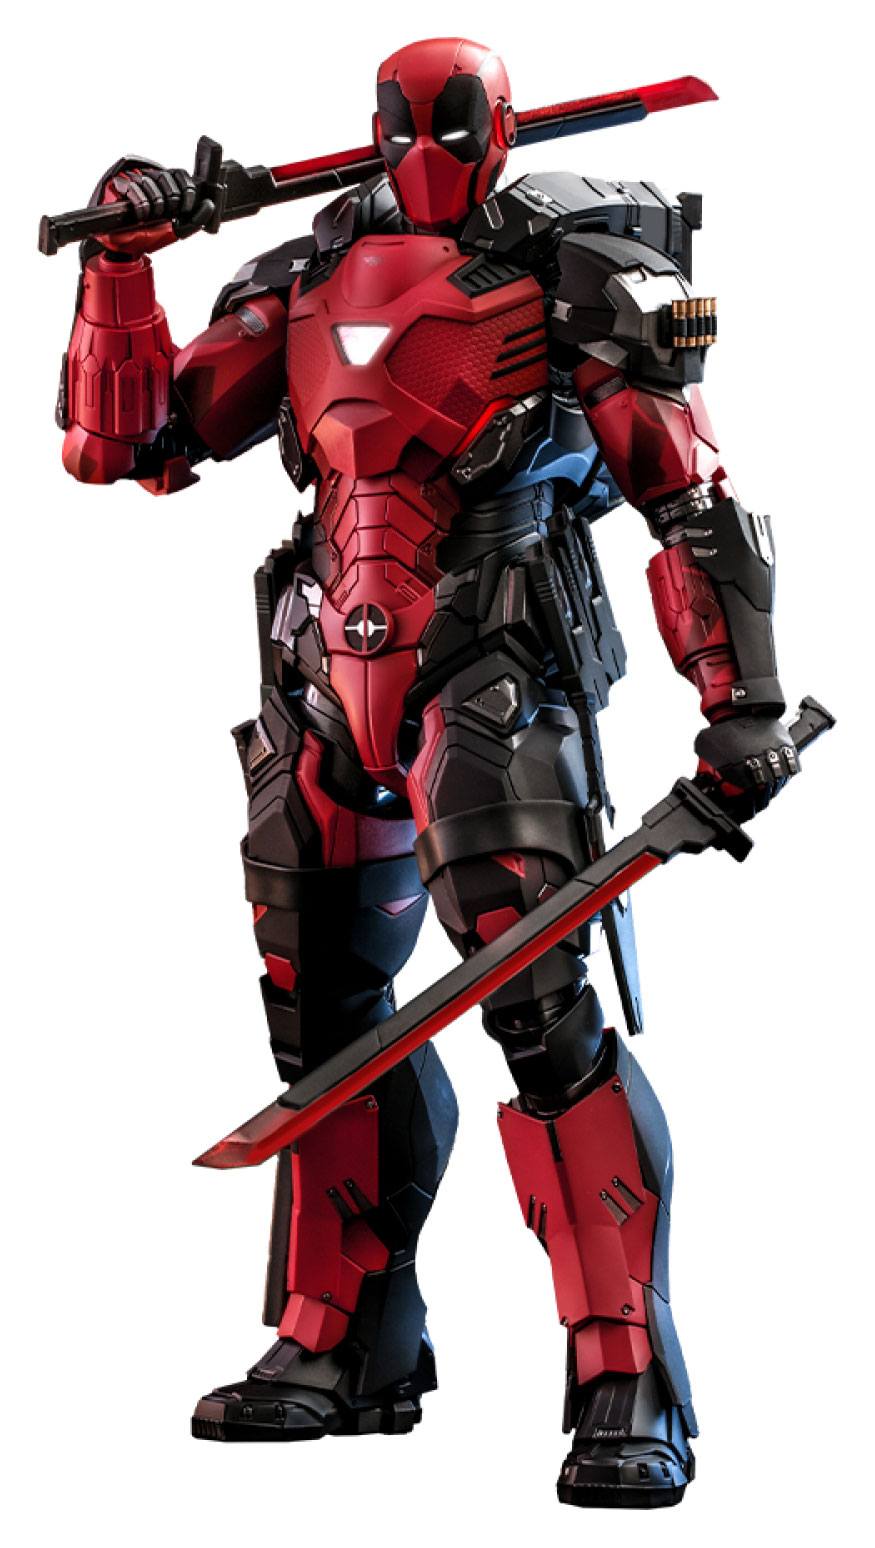 Figura Armorized Deadpool Marvel Comic Masterpiece 1 6 Hot Toys 33cm 10